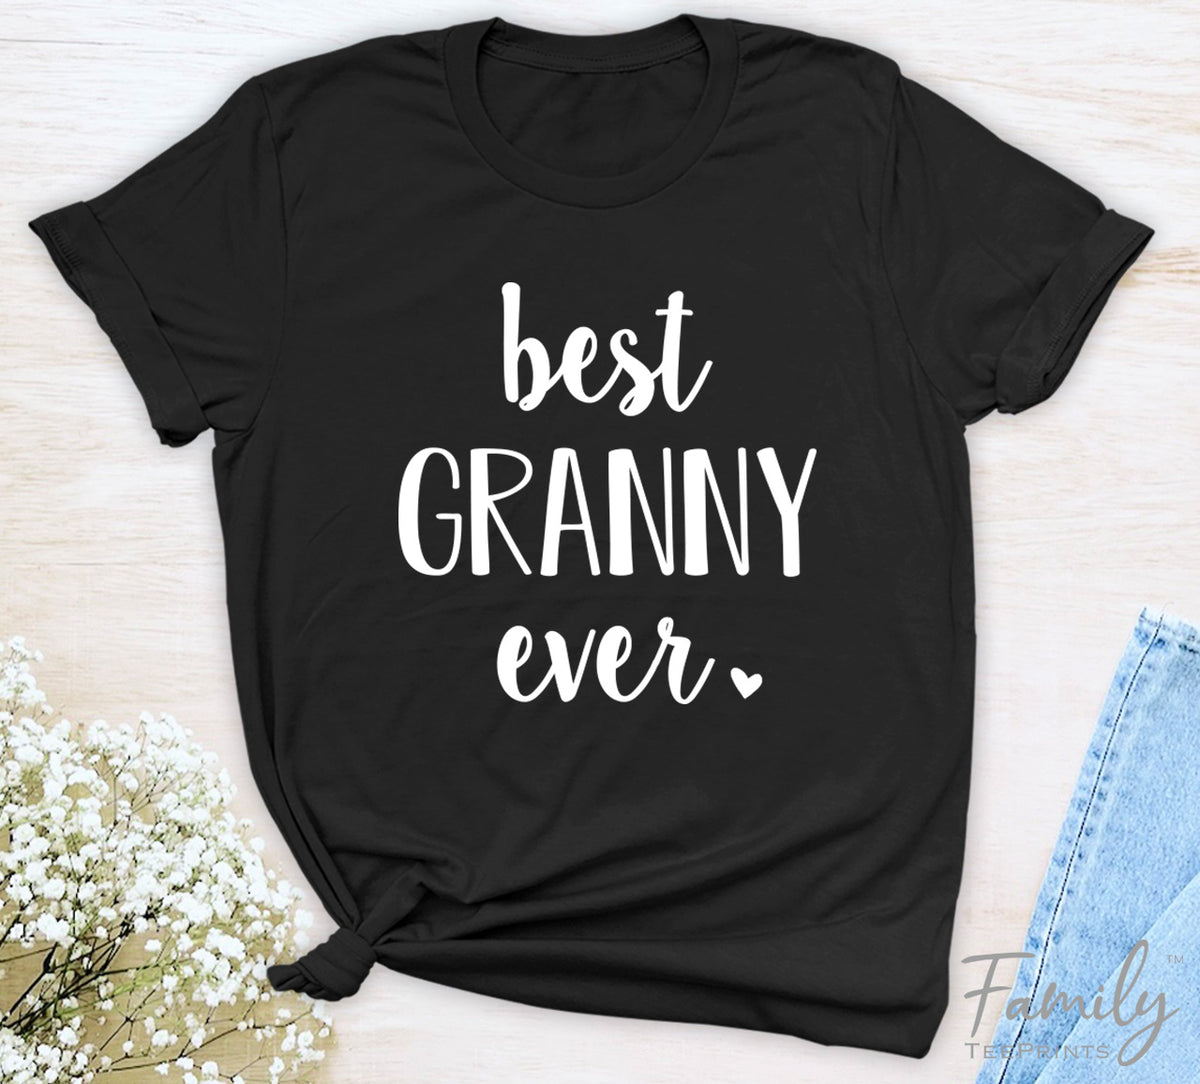 Best Granny Ever - Unisex T-shirt - Granny Shirt - Gift For New Granny - familyteeprints